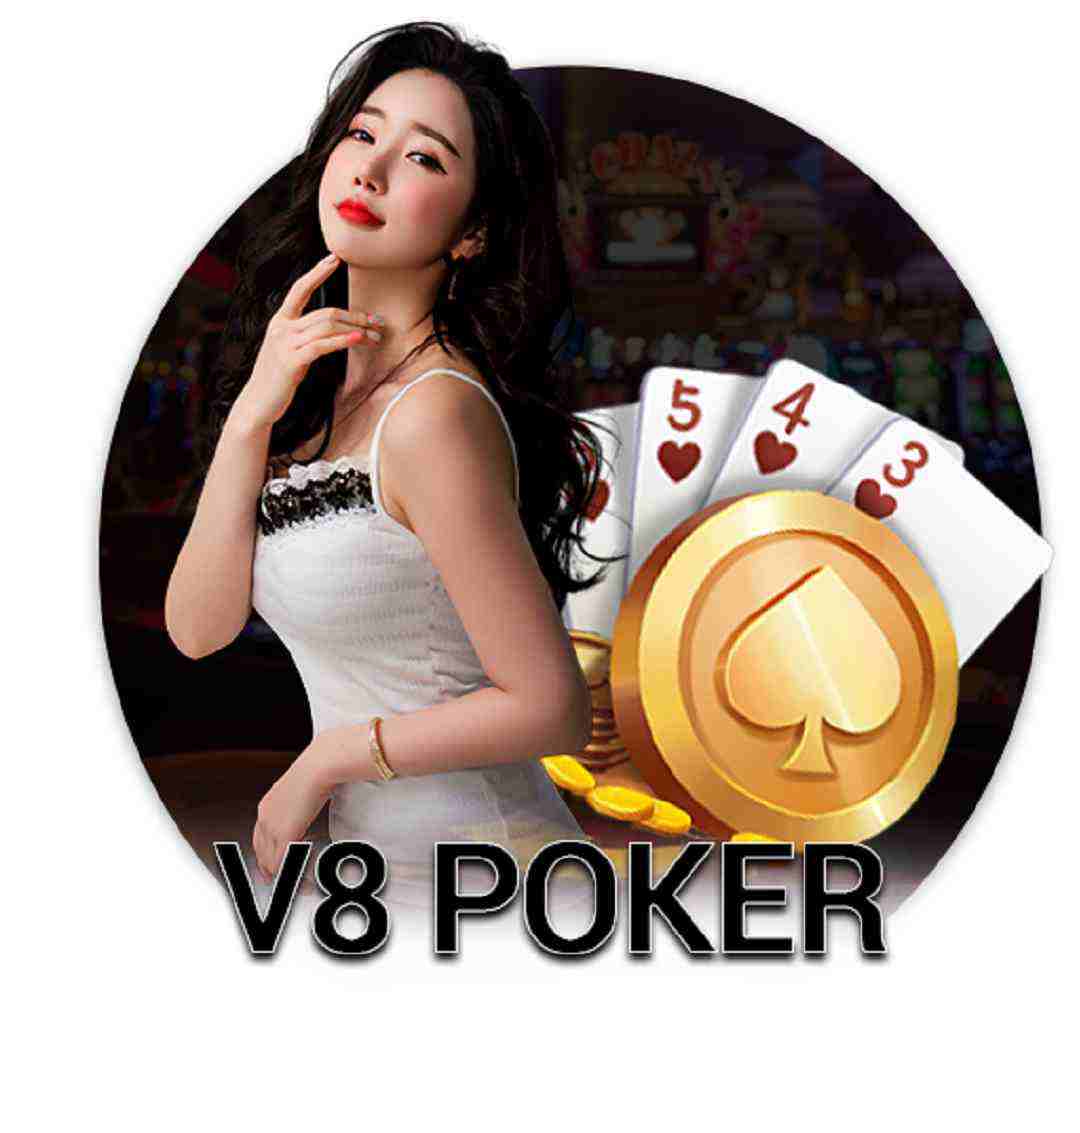 Vài nét sơ lược về thương hiệu mang tên V8 Poker